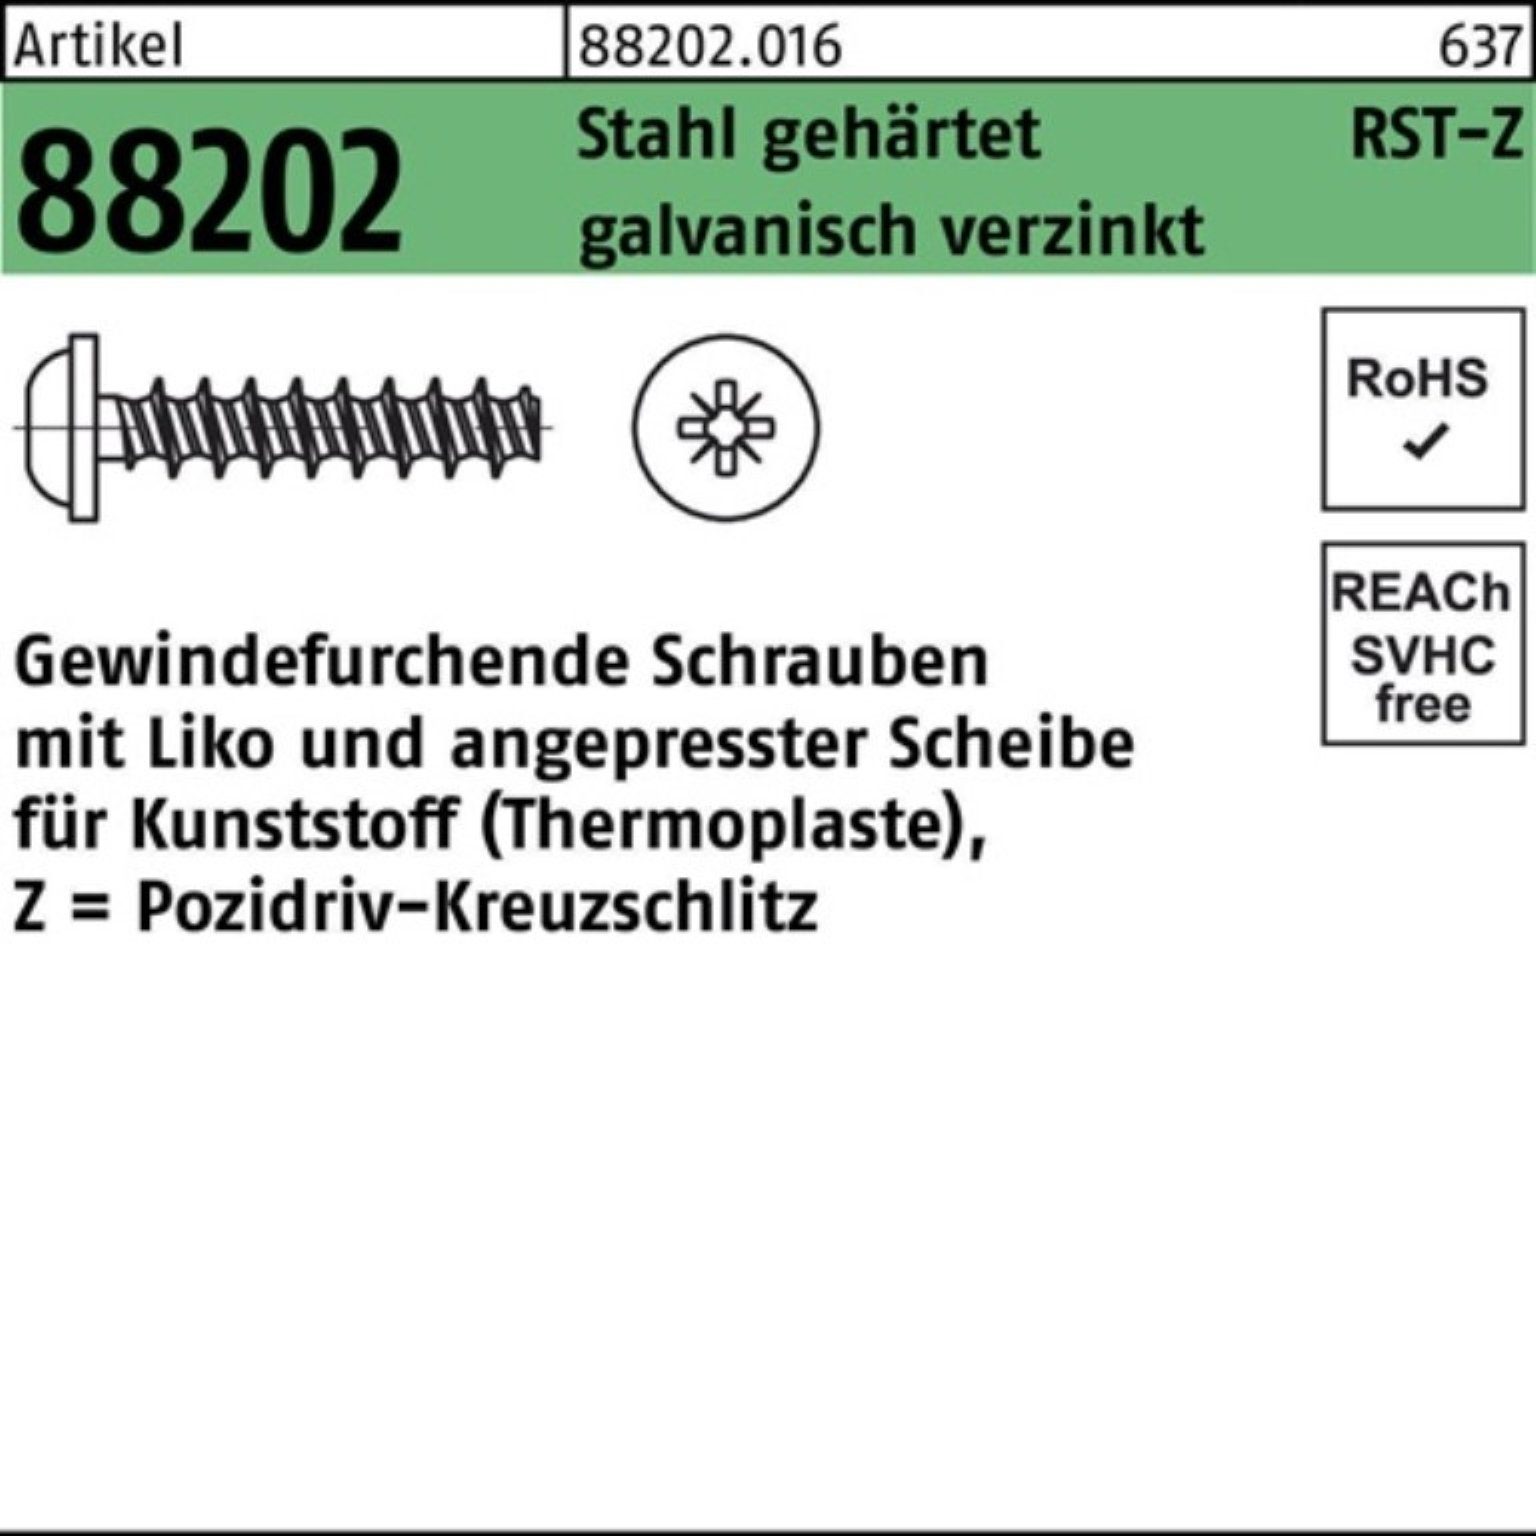 88202 Gewindeschraube Reyher Gewindefurchendeschraube Pack R PZ Stahl gehä 1000er 3x8-Z Liko